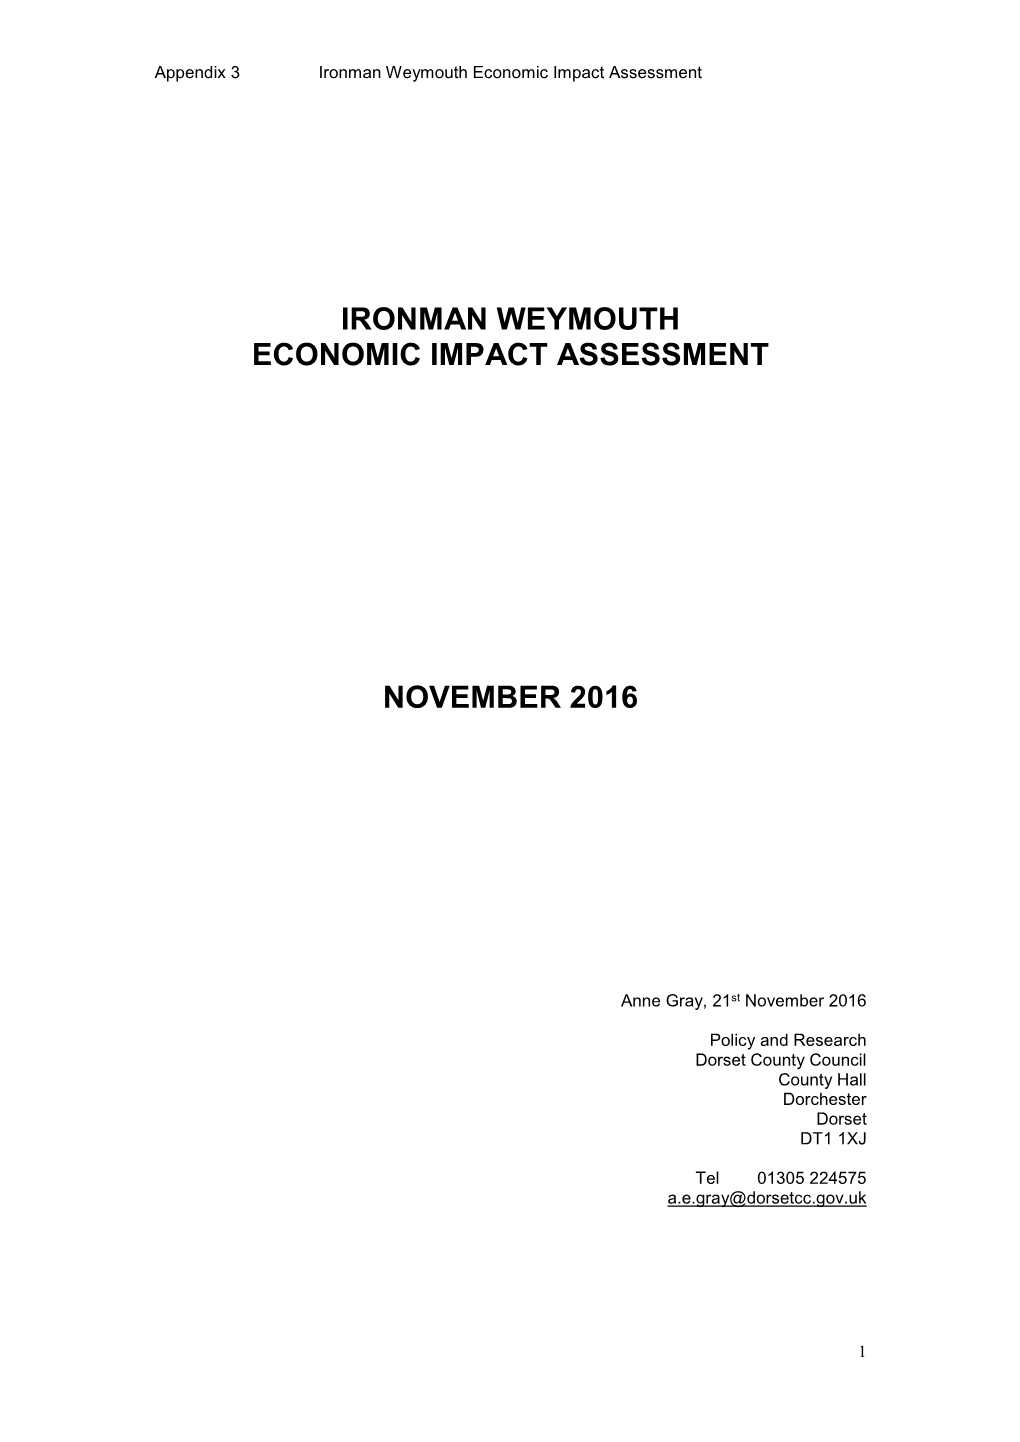 Ironman Weymouth Economic Impact Assessment November 2016